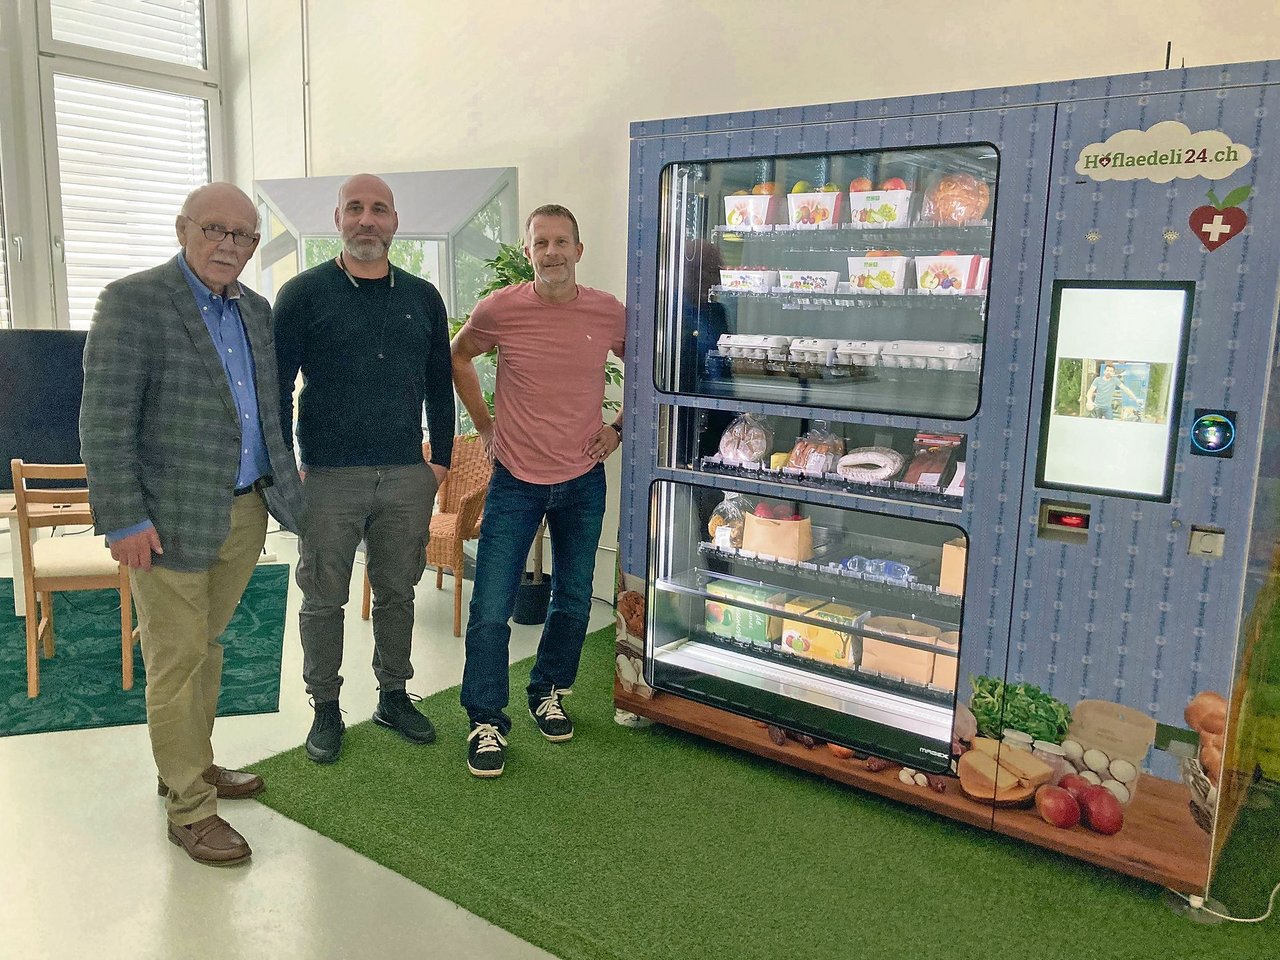 Werner Vogt und Giuseppe Milazzo von Cardedge GmbH sowie Marco Calzimiglia vom Zürcher Bauernverband (ZBV) zeigen einen Verkaufsautomaten von Hoflaedeli24.ch. (Bild Alexandra Stückelberger)